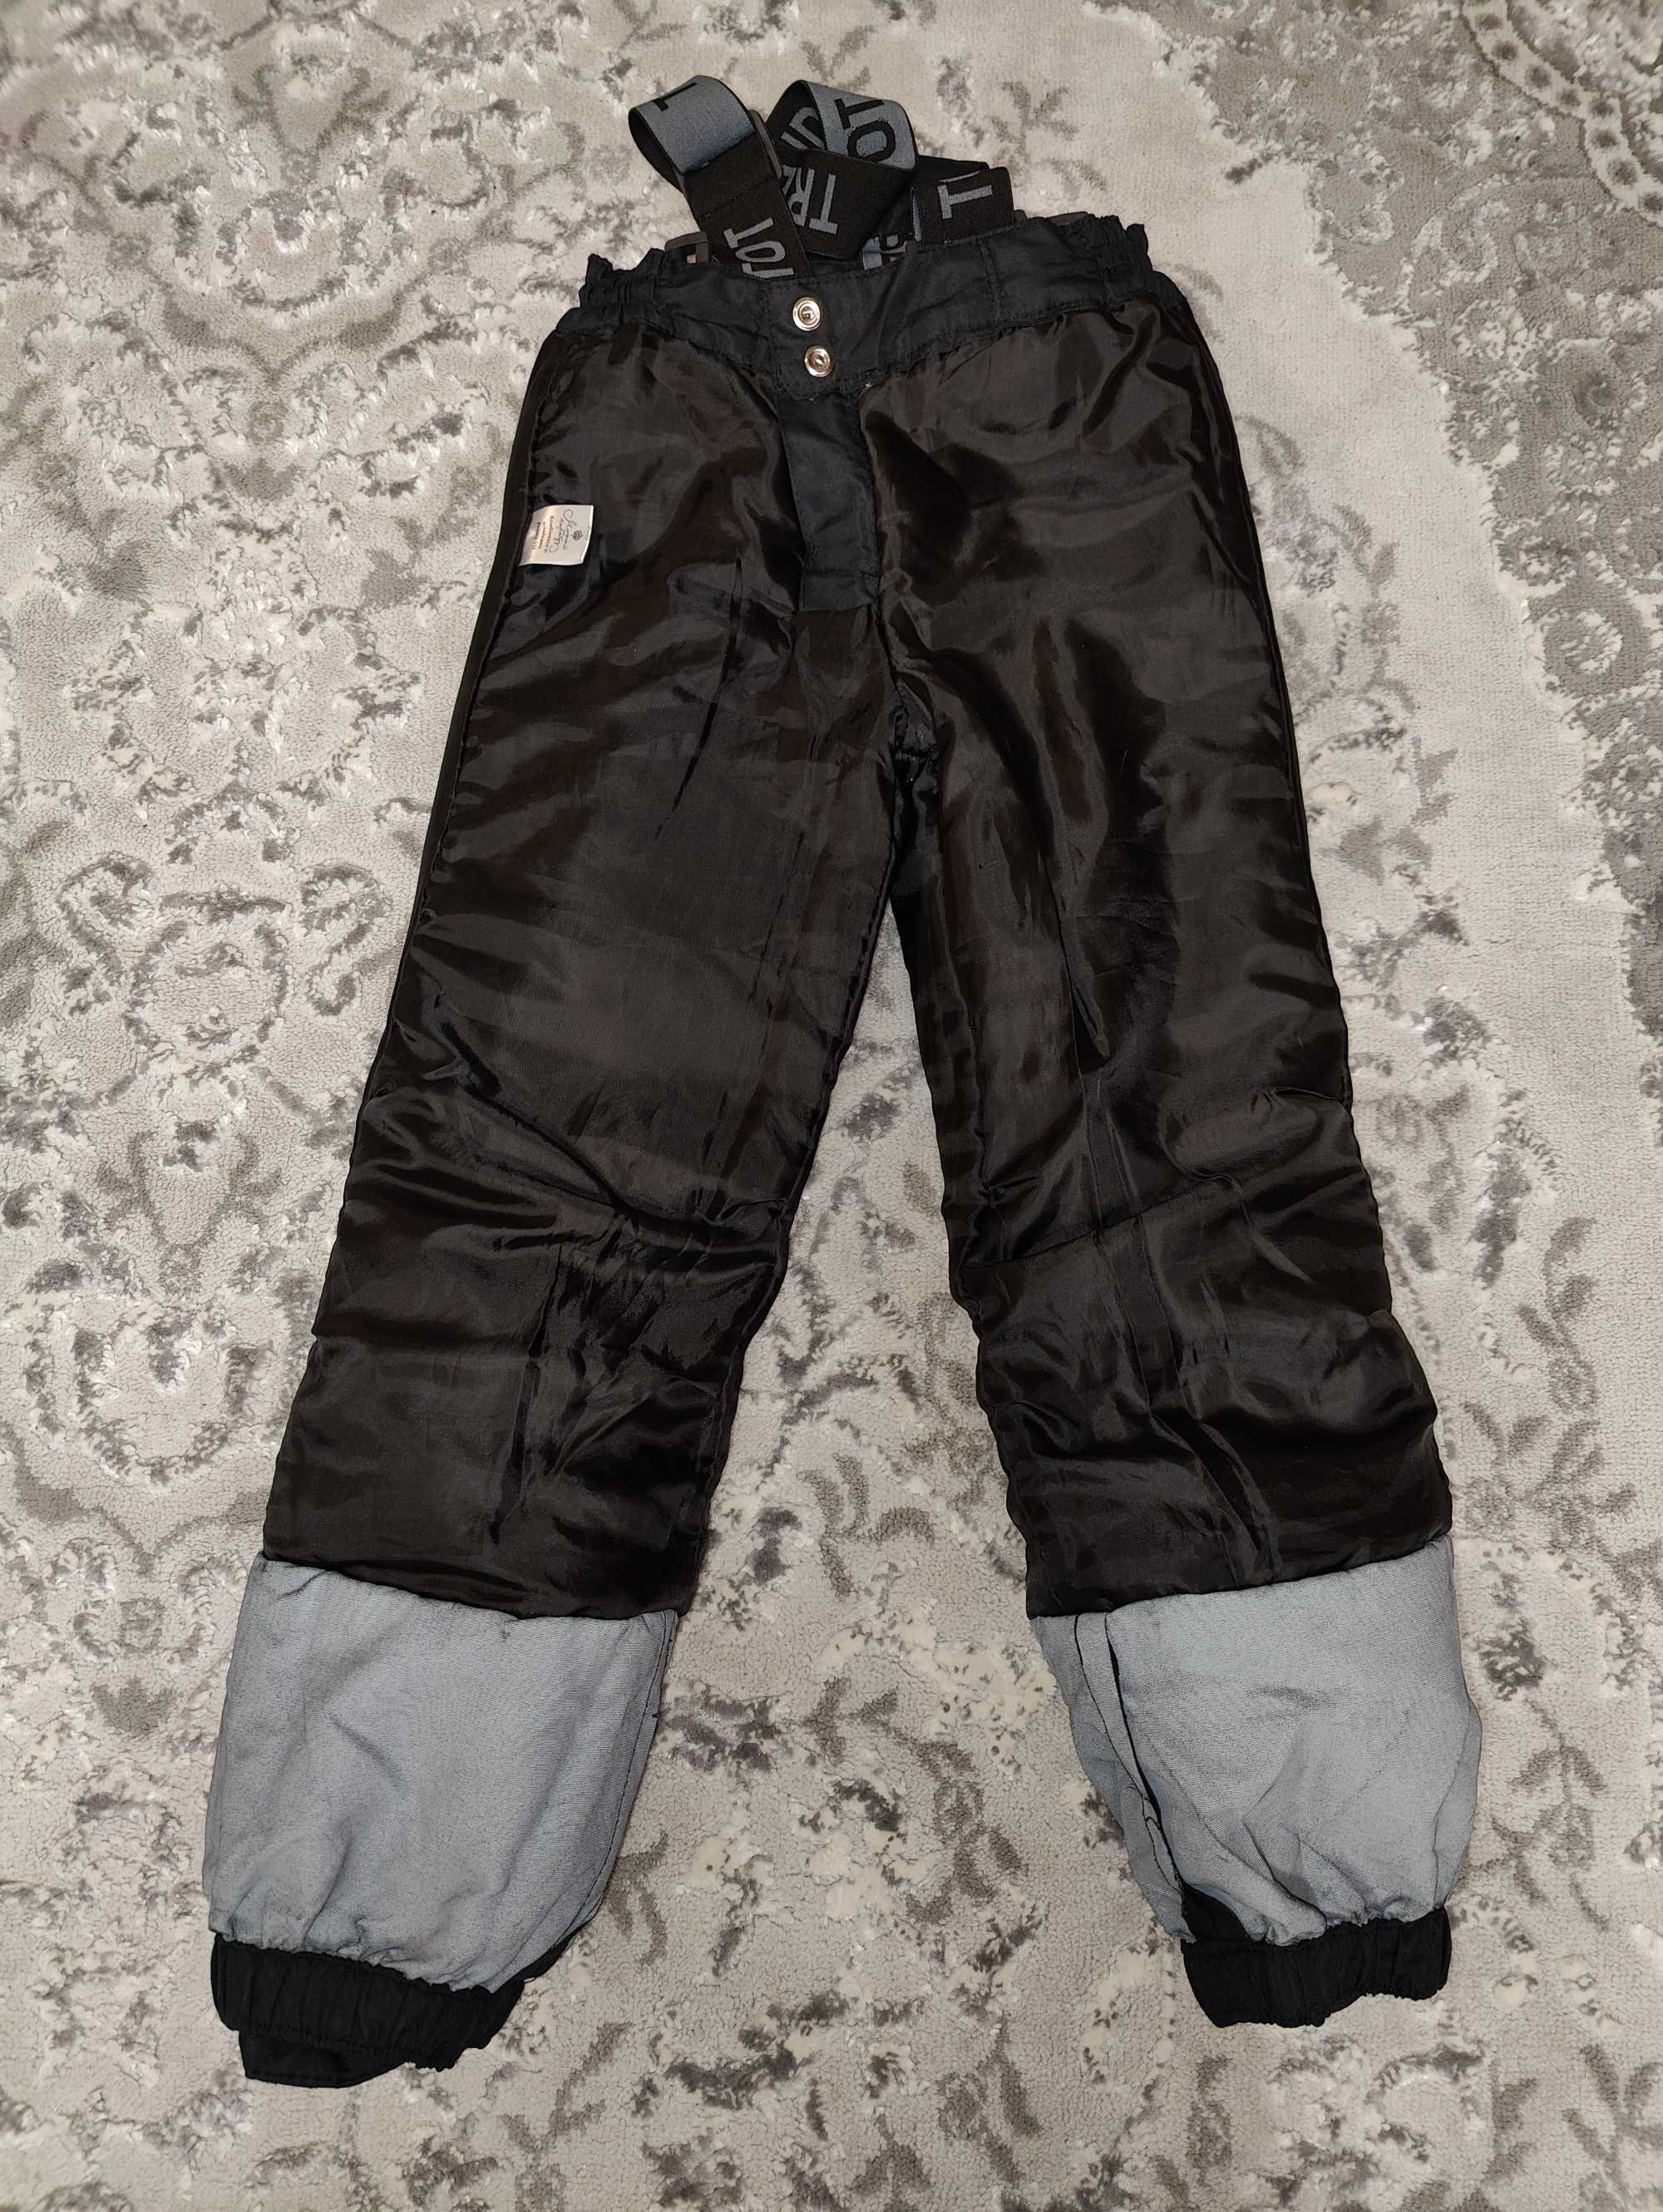 Зимний детский  комплект куртка штаны 5-6 лет